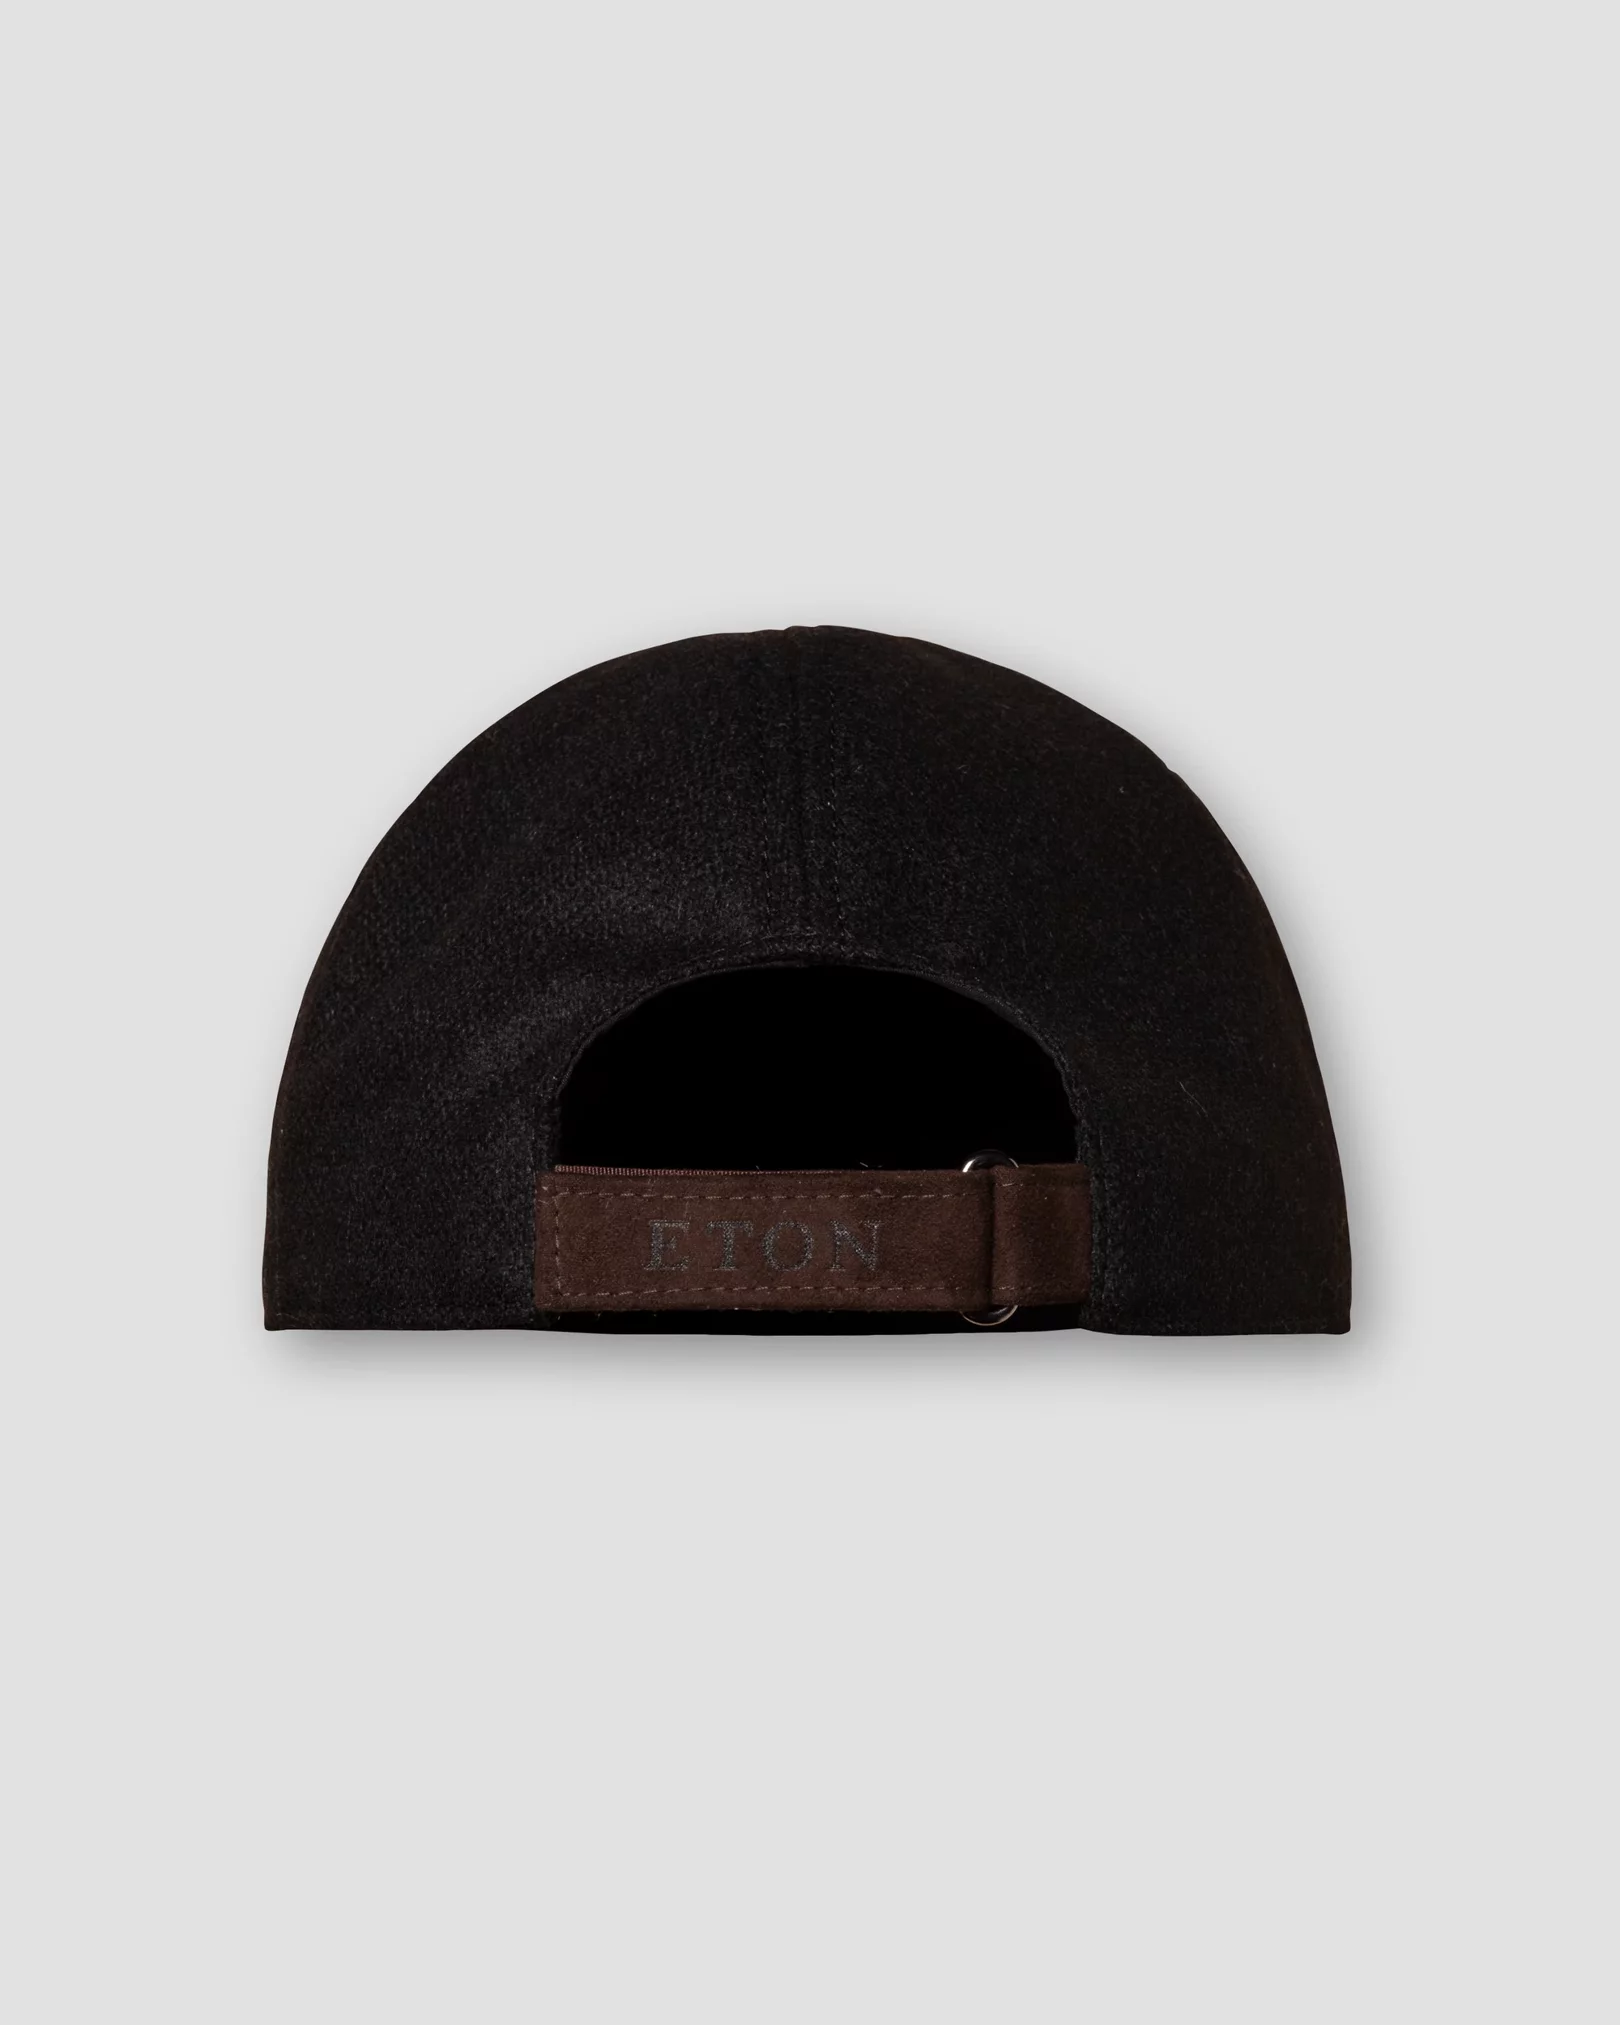 Eton - black wool cap